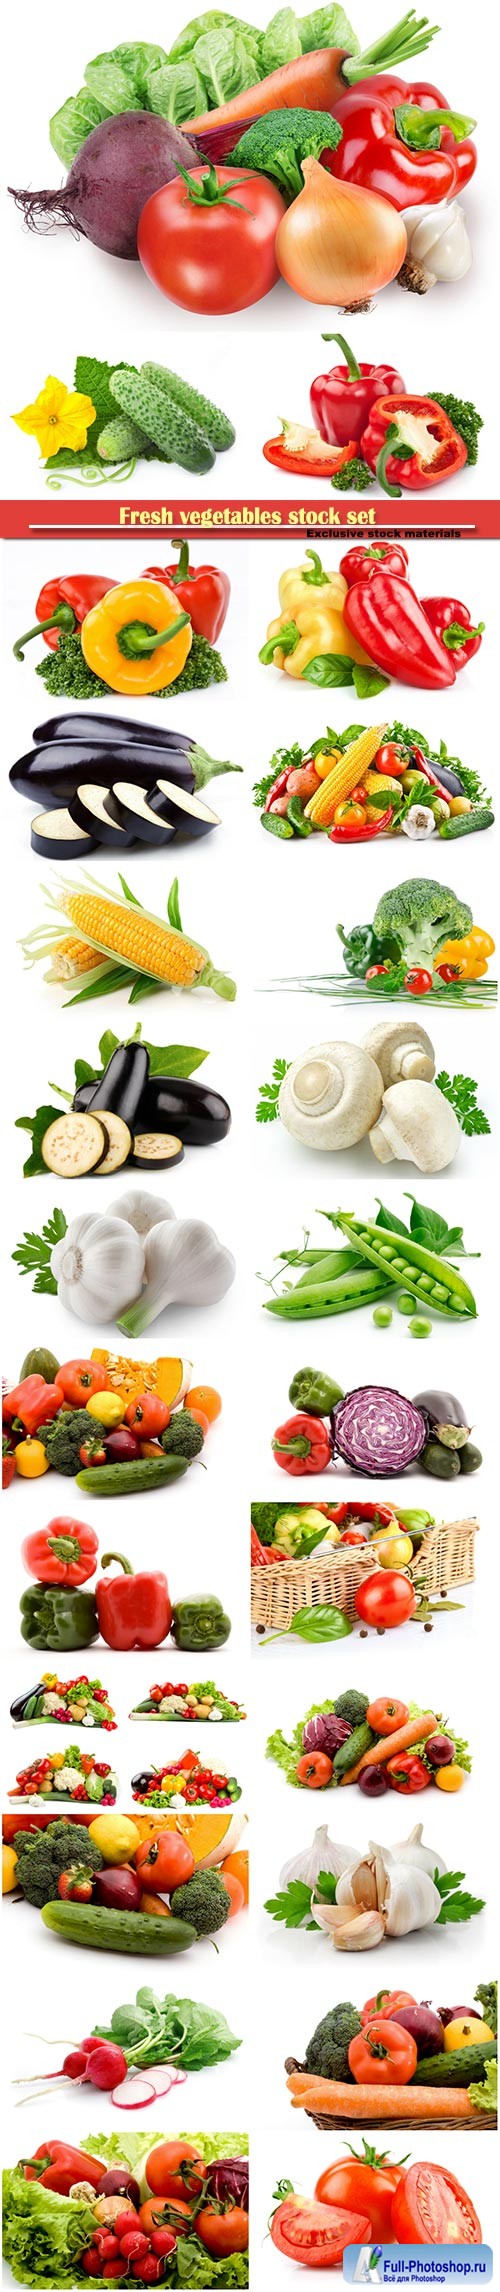 Fresh vegetables stock set